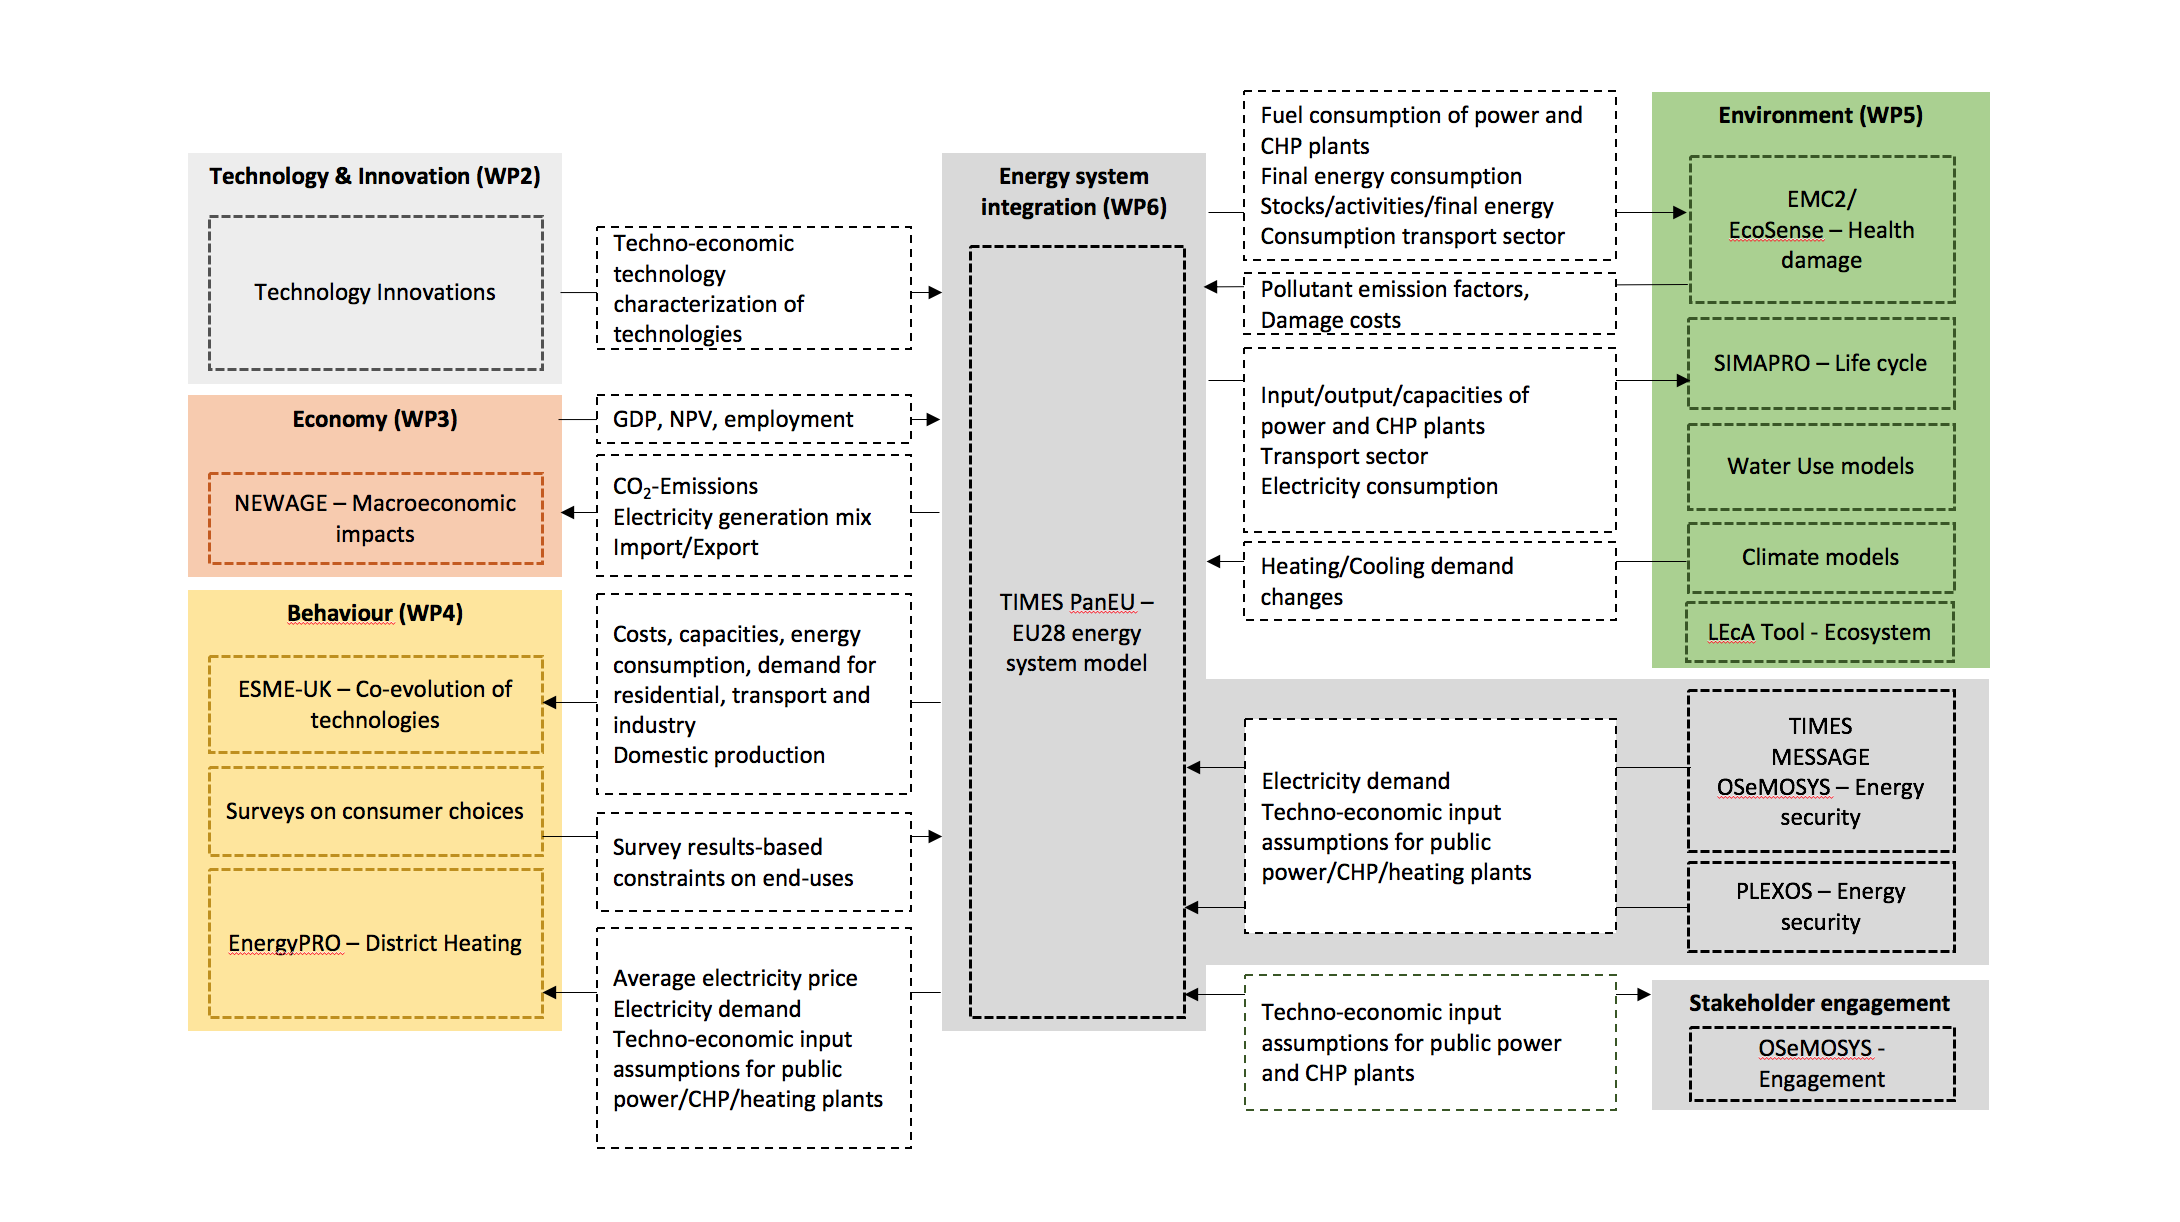 Full integrated modelling framework